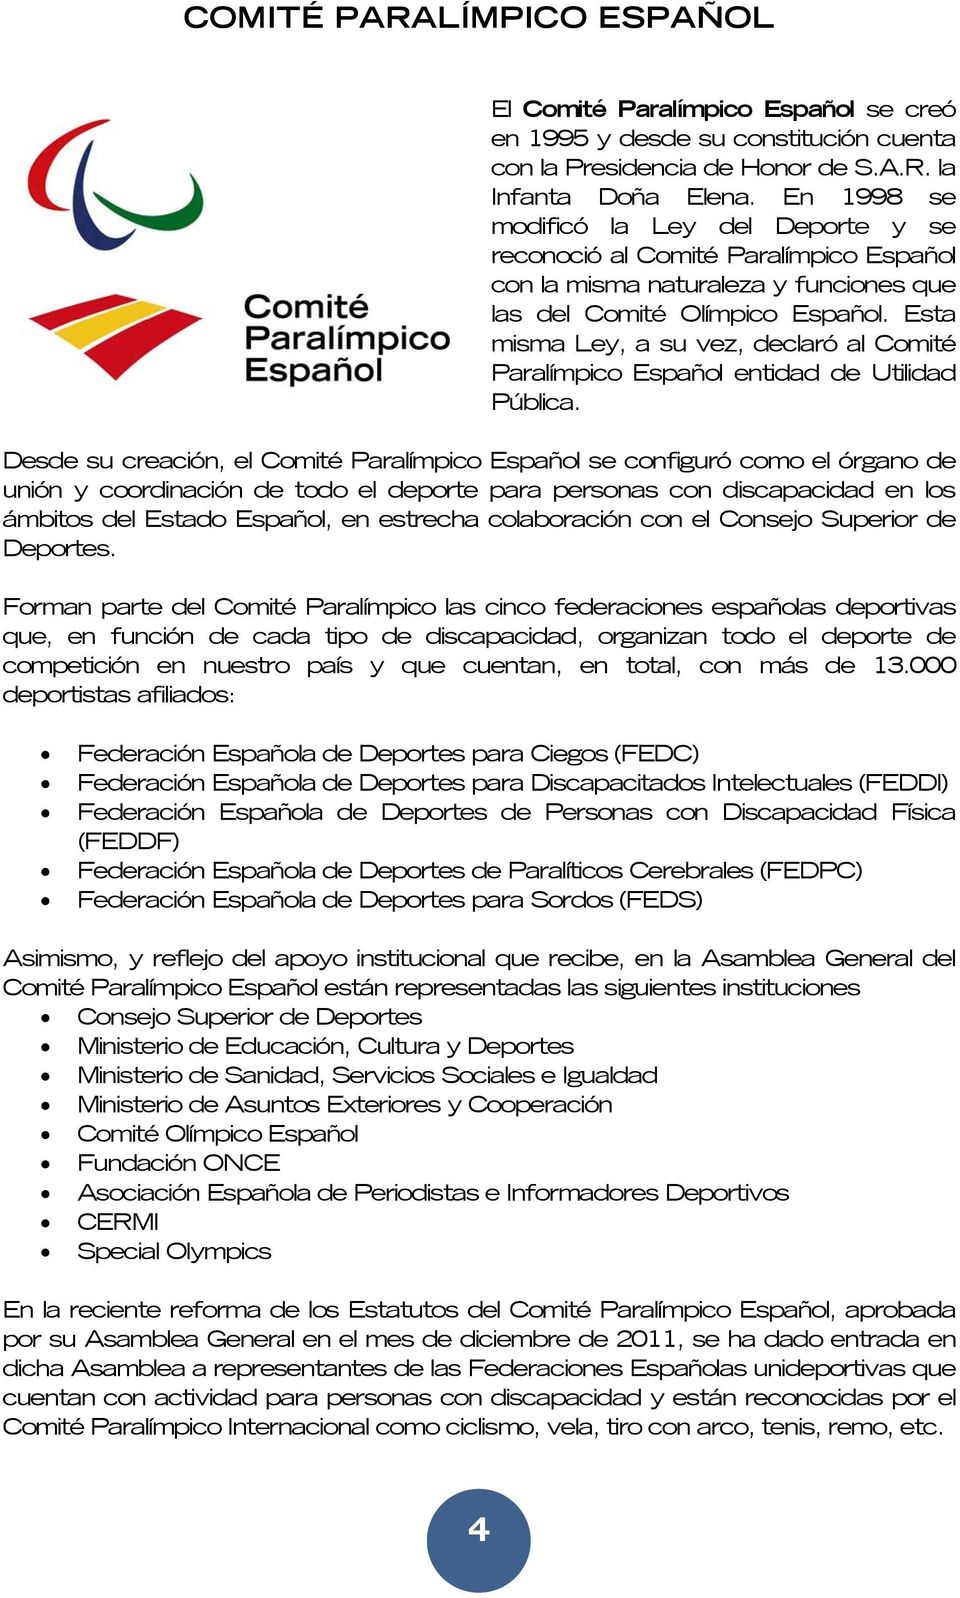 Esta misma Ley, a su vez, declaró al Comité Paralímpico Español entidad de Utilidad Pública.